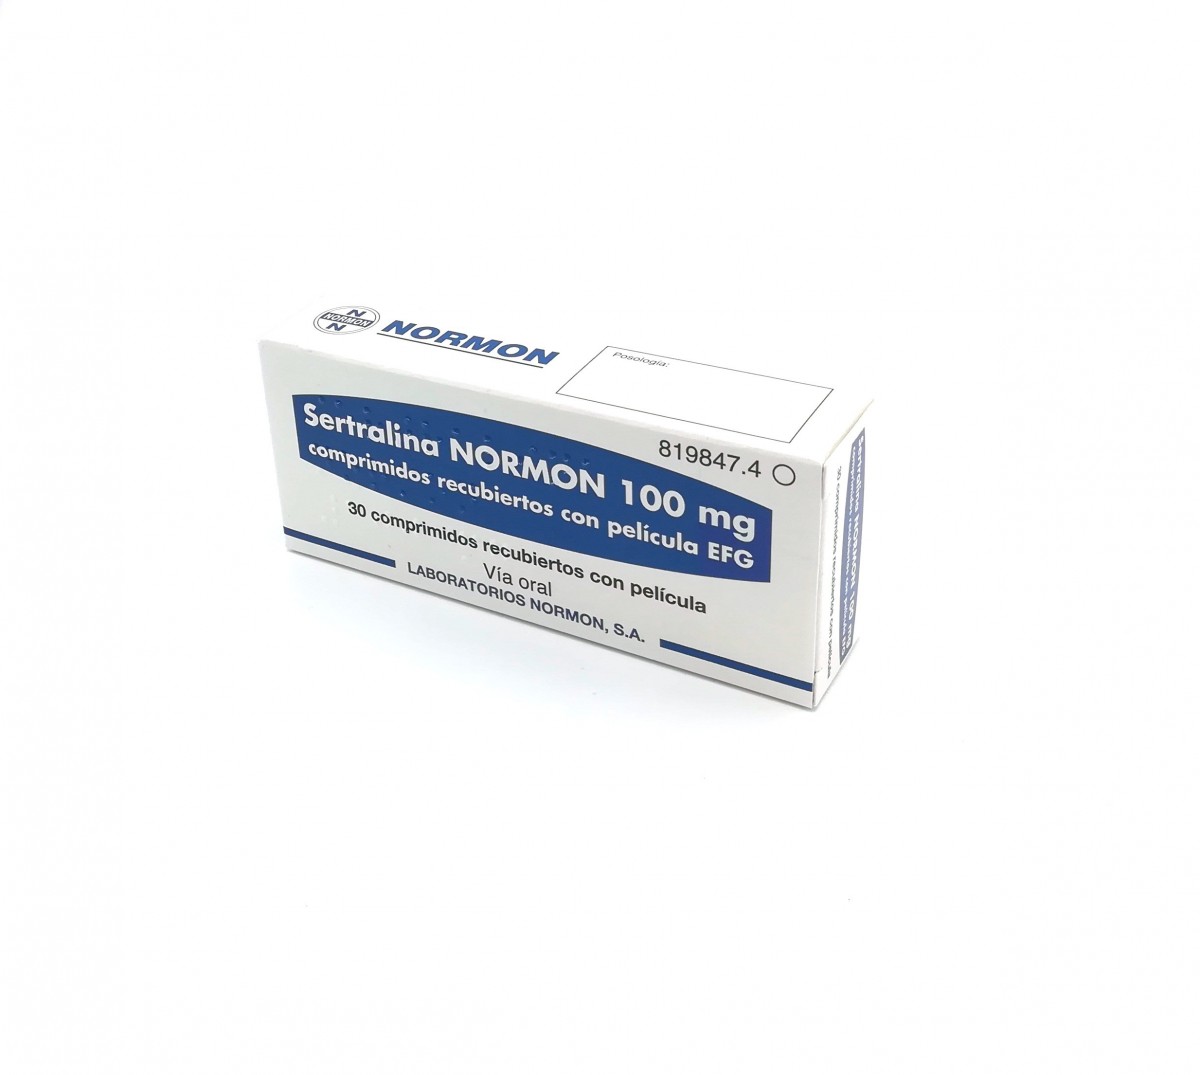 SERTRALINA NORMON 100 mg COMPRIMIDOS RECUBIERTOS CON PELICULA EFG, 500 comprimidos fotografía del envase.